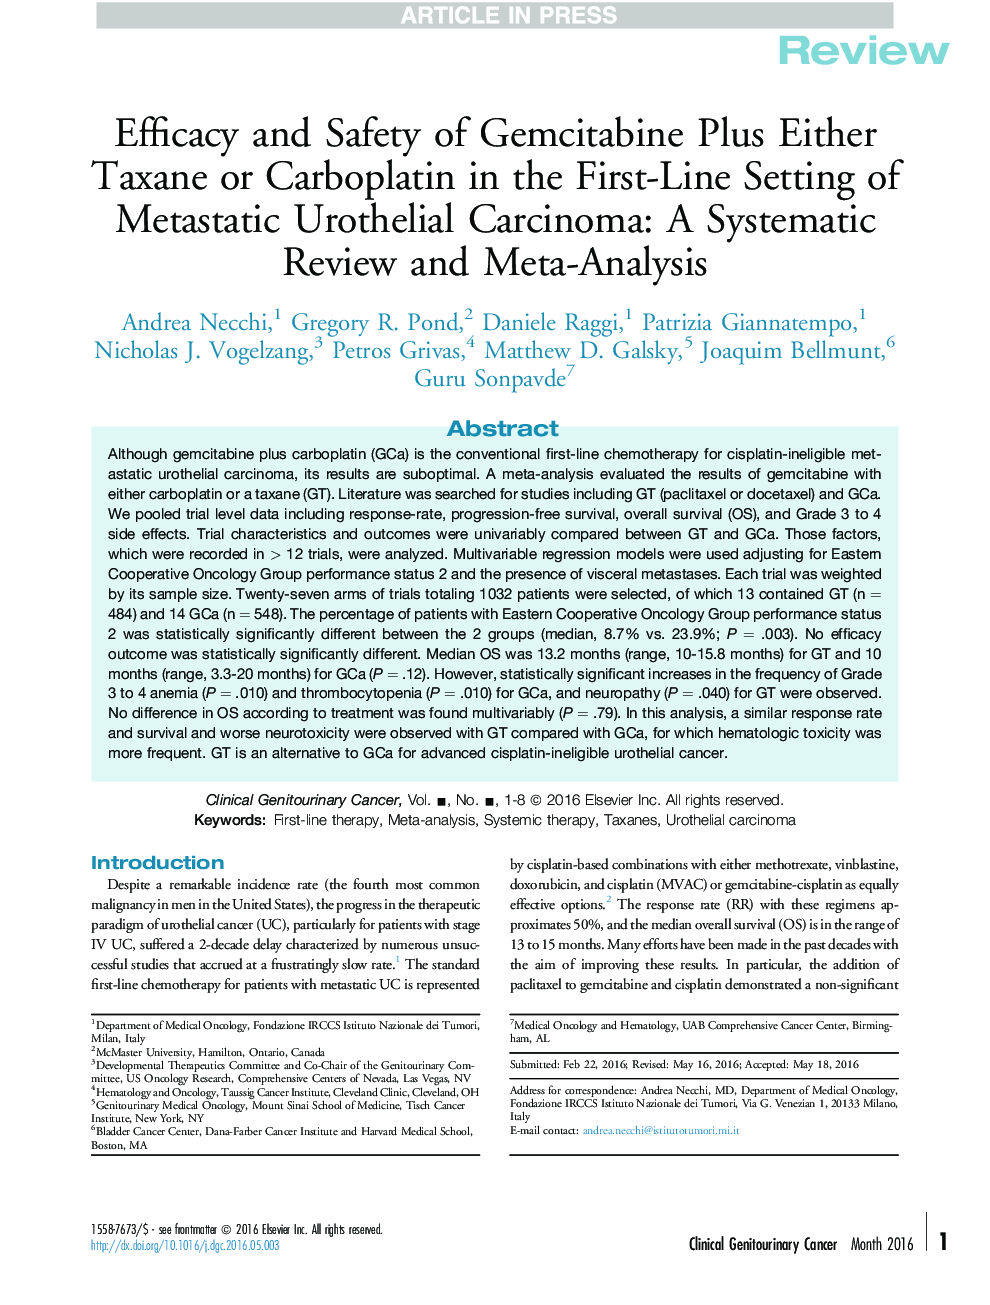 اثربخشی و ایمنی گامسی تانتین پلاس هر دو تاکسان یا کربوپلاتین در اولین مرحله از کارسینوم اوراستیلال متاستاتیک: یک بررسی منظم و متاآنالیز 